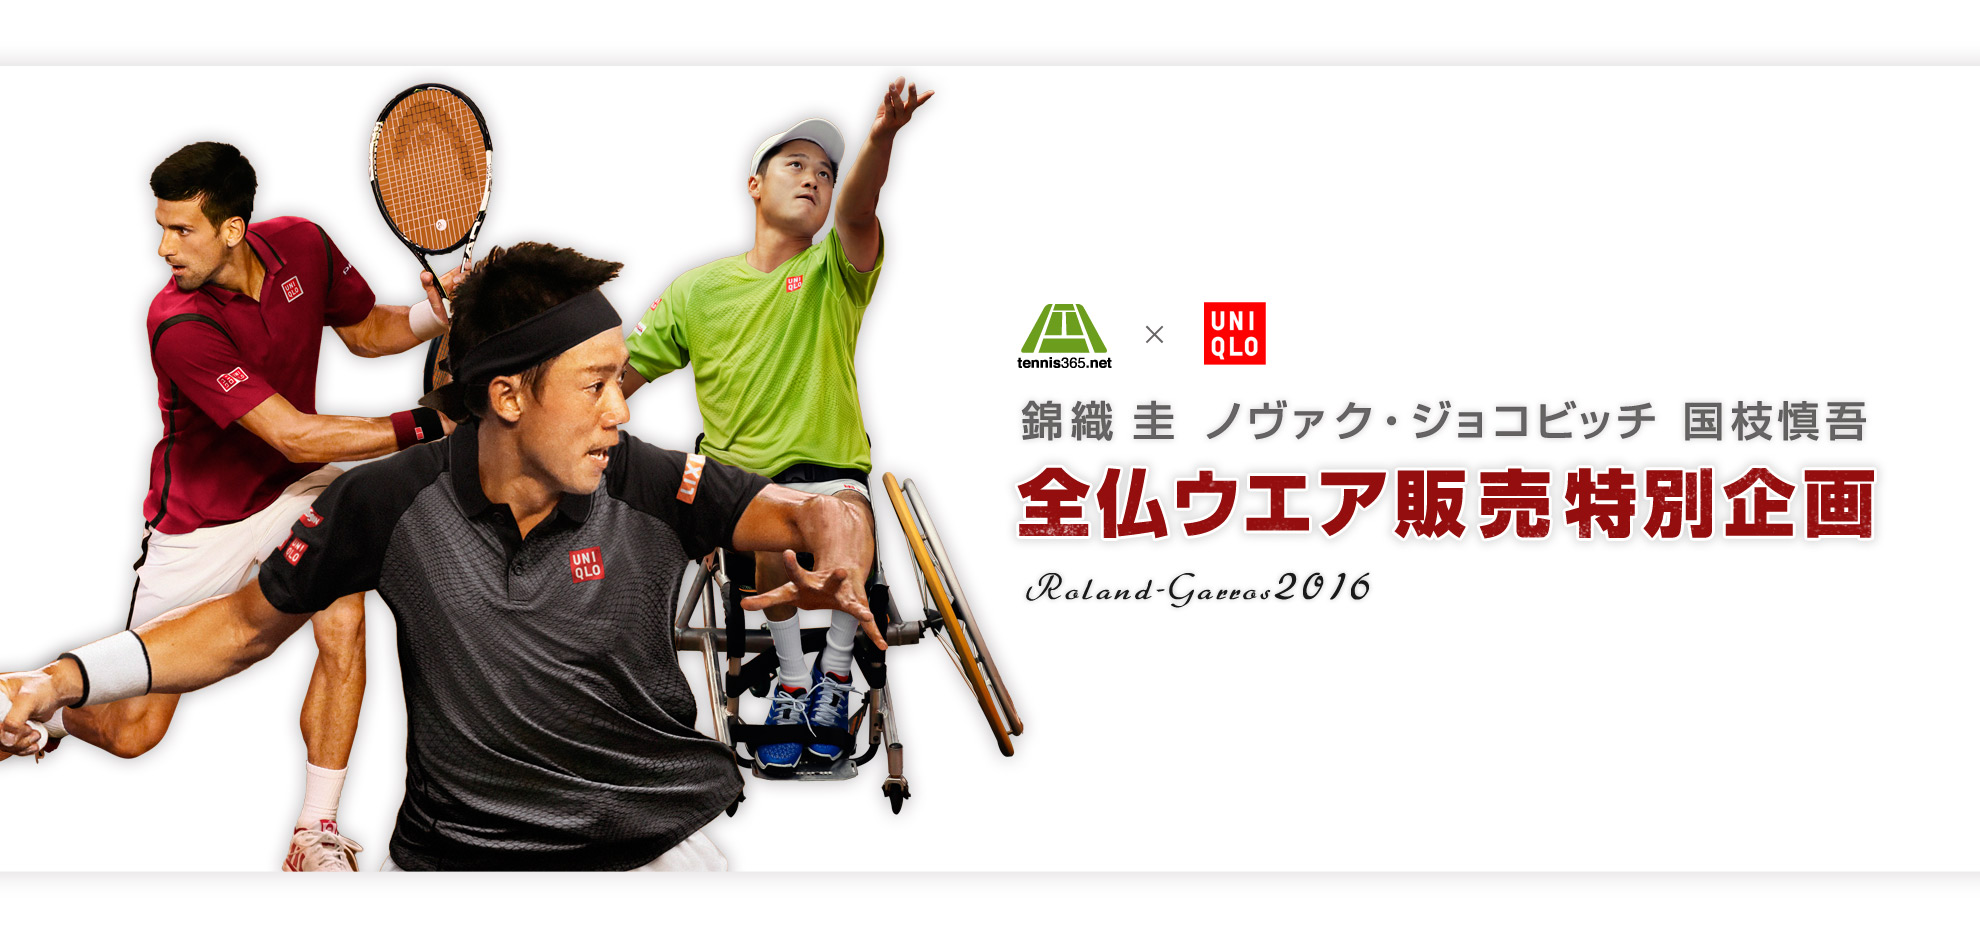 Tennis365.net×ユニクロ 全仏ウエア誕生秘話